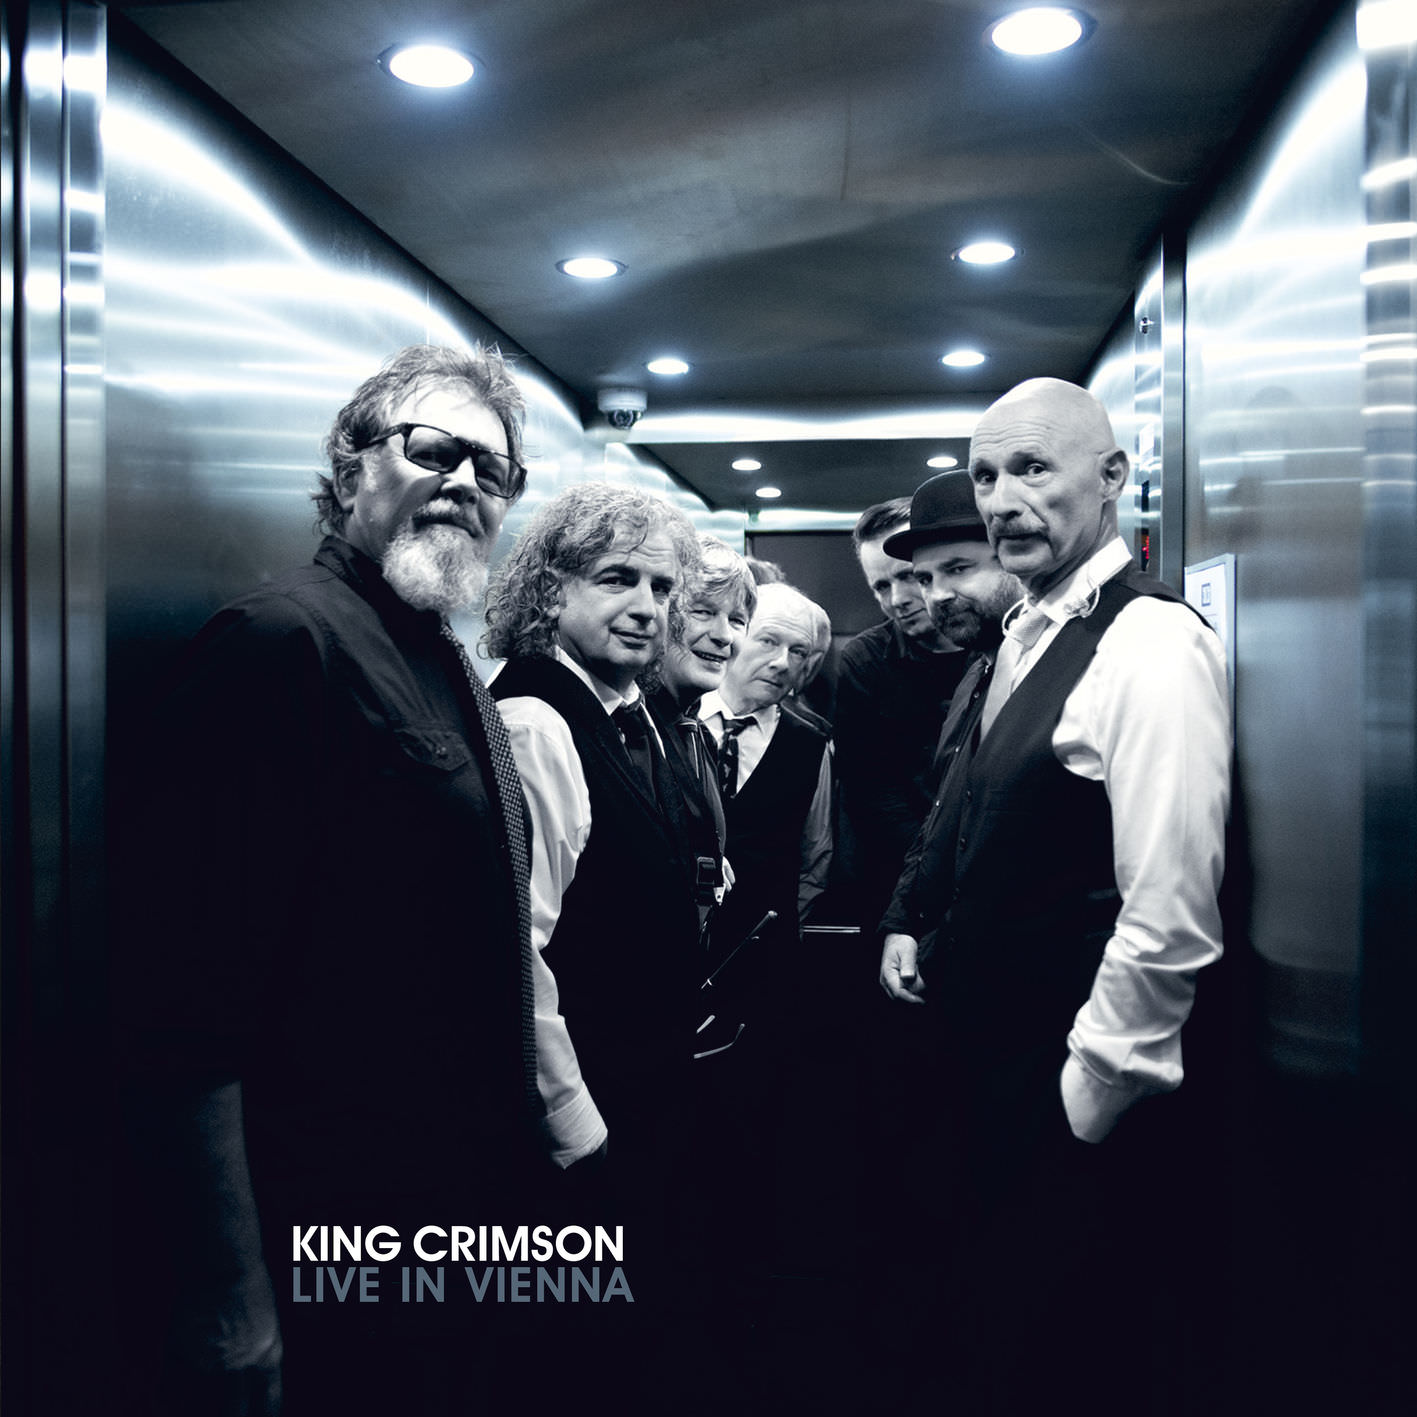 King Crimson - Live in Vienna, 1 December 2016 (2018) [FLAC 24bit/48kHz]